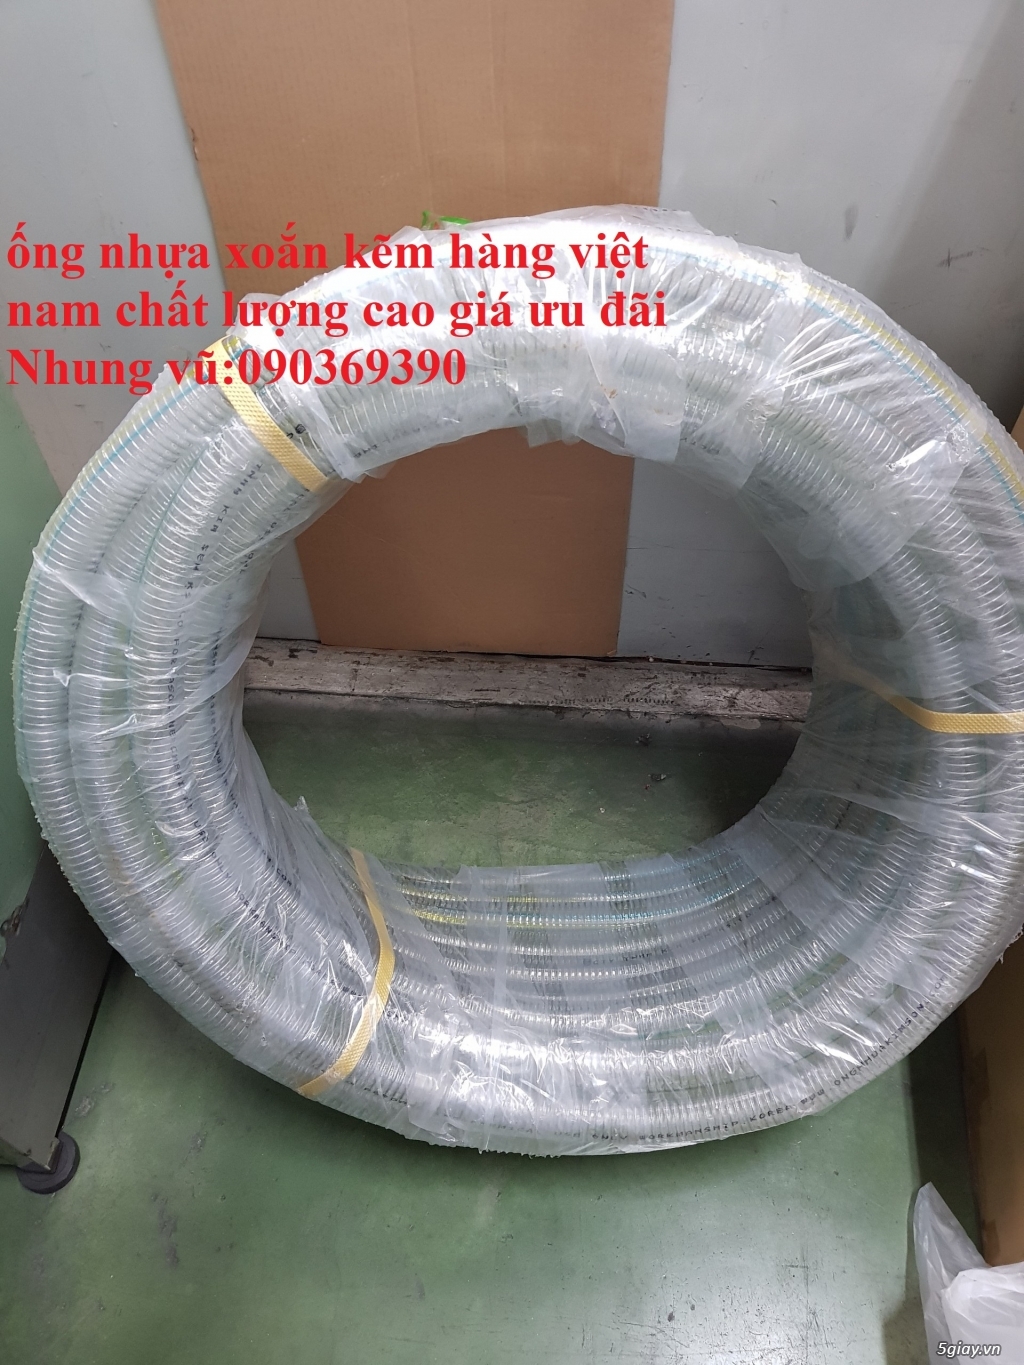 đại lý cung cấp ống nhựa lõi thép giá rẻ Phi 200 - giao hàng toàn quốc - 4